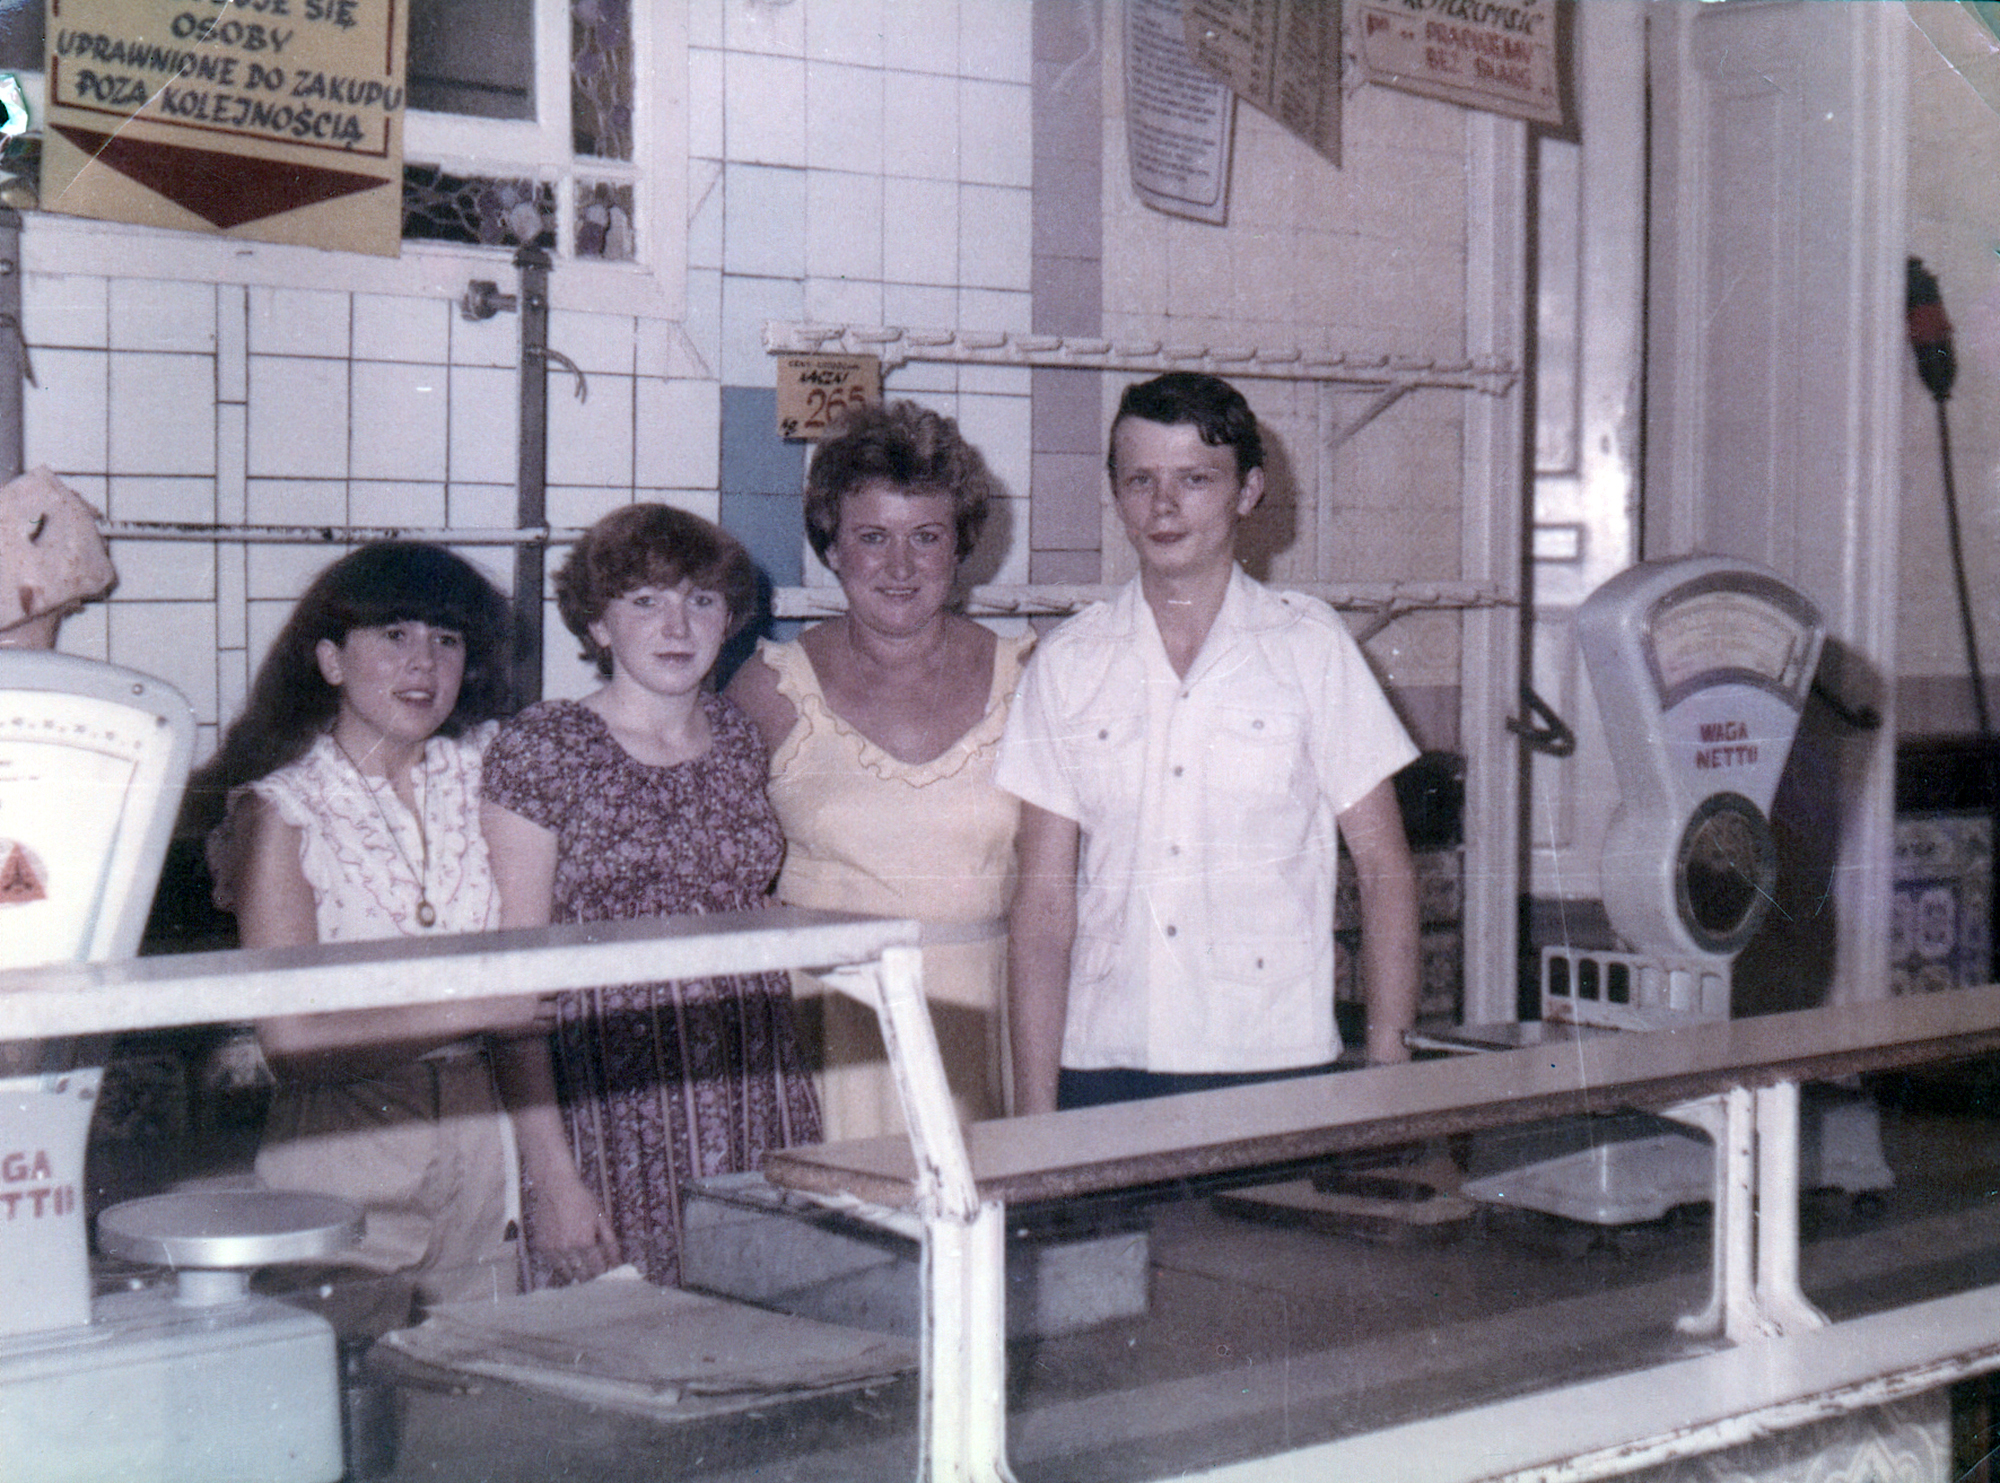 W sklepie przy Opawskiej stoją od lewej: Ewa Kała, Edyta Madej, kierowniczka Barbara Joszko i sprzedawca Sylwester